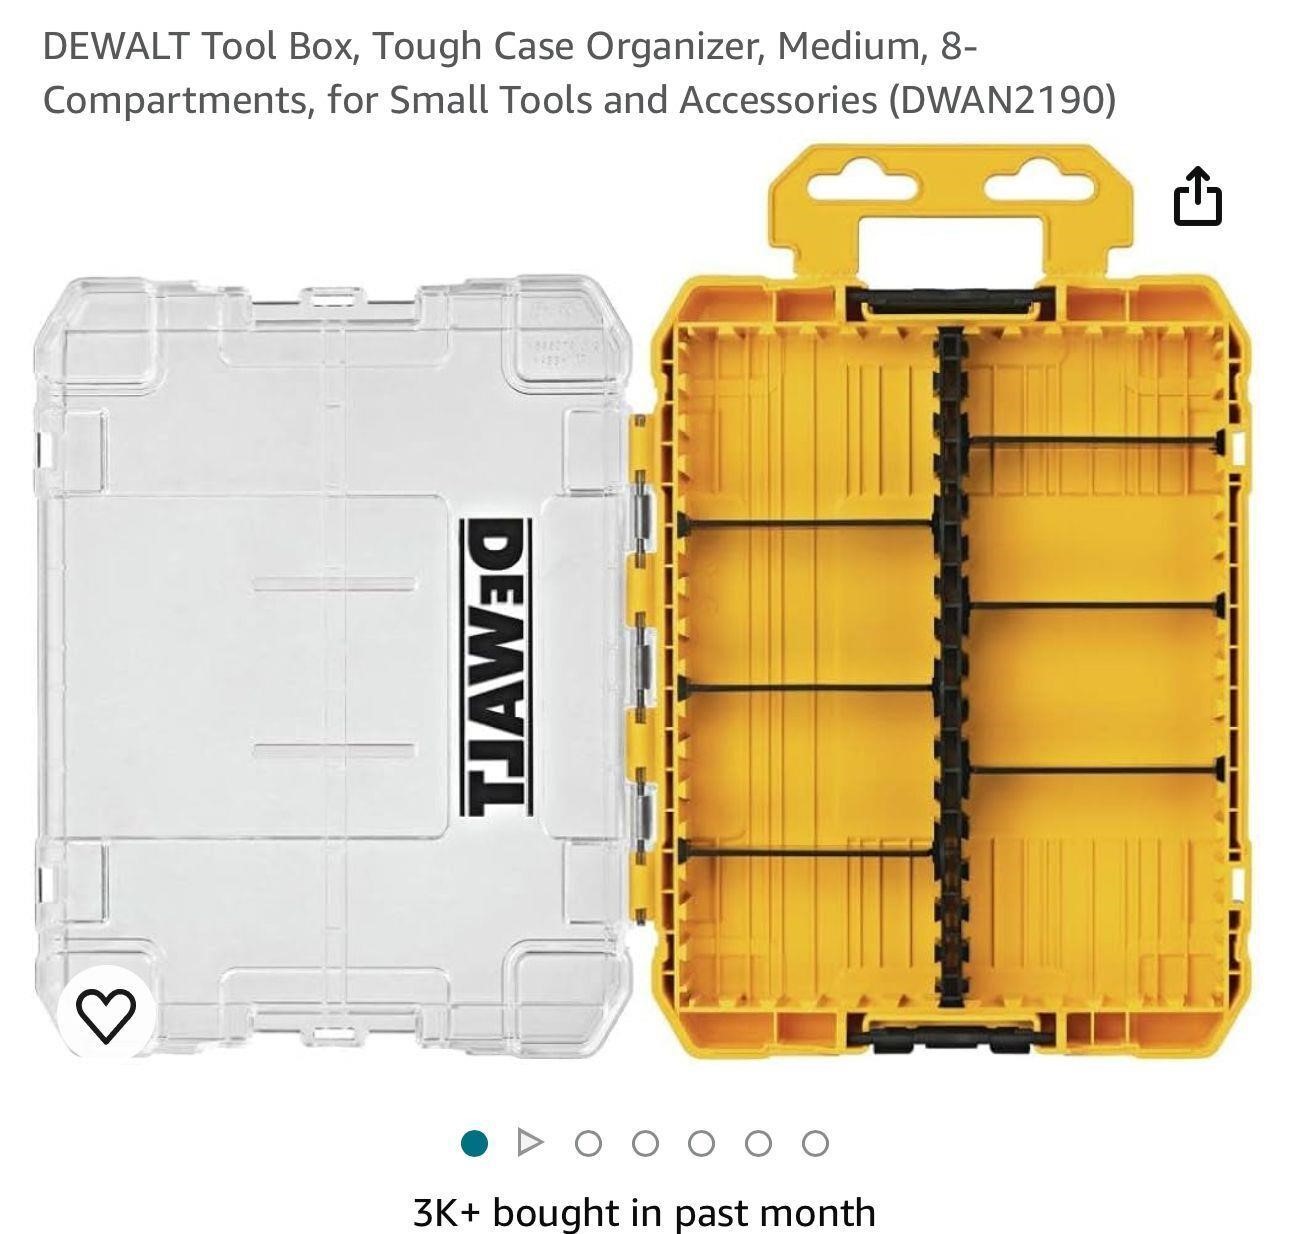 DEWALT Tool Box, Tough Case Organizer